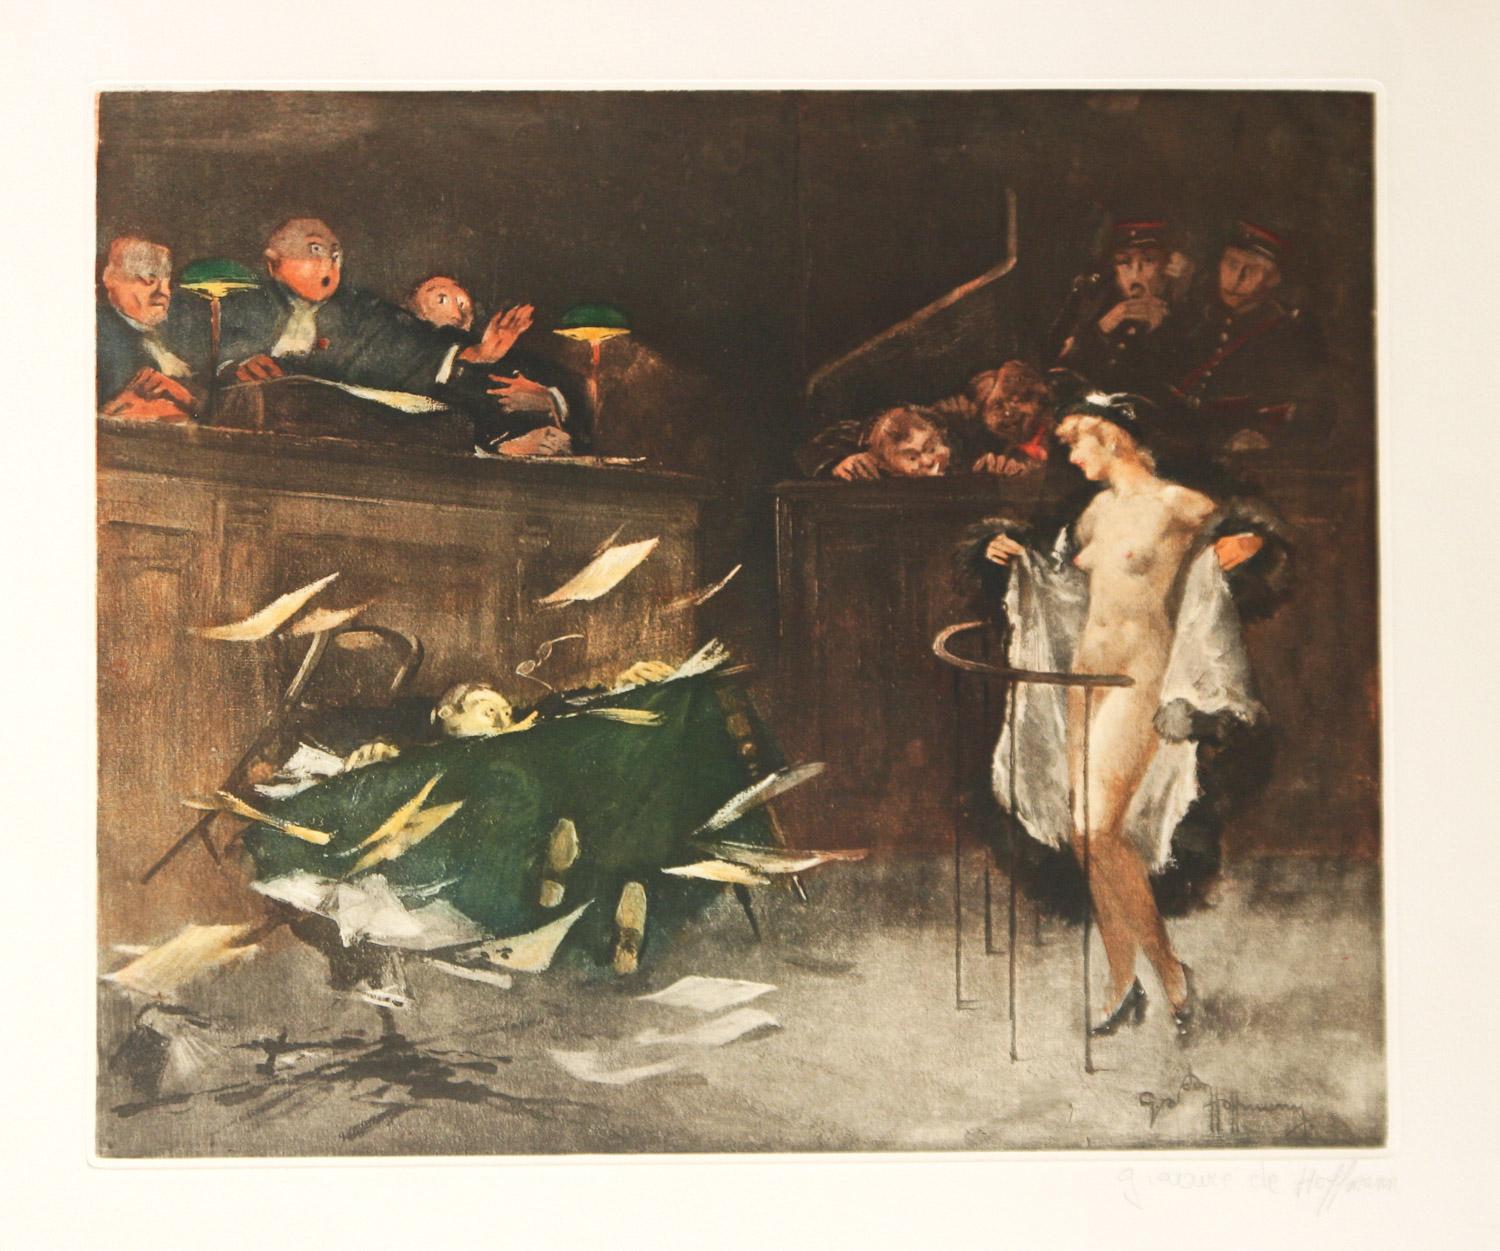       L'artiste français Gaston Hoffman. Hoffman (1883 - 1960) était un peintre, décorateur, caricaturiste et illustrateur bien connu pour ses scènes satiriques de tribunaux français. Il y a trois scènes liées ici. Le premier s'intitule  